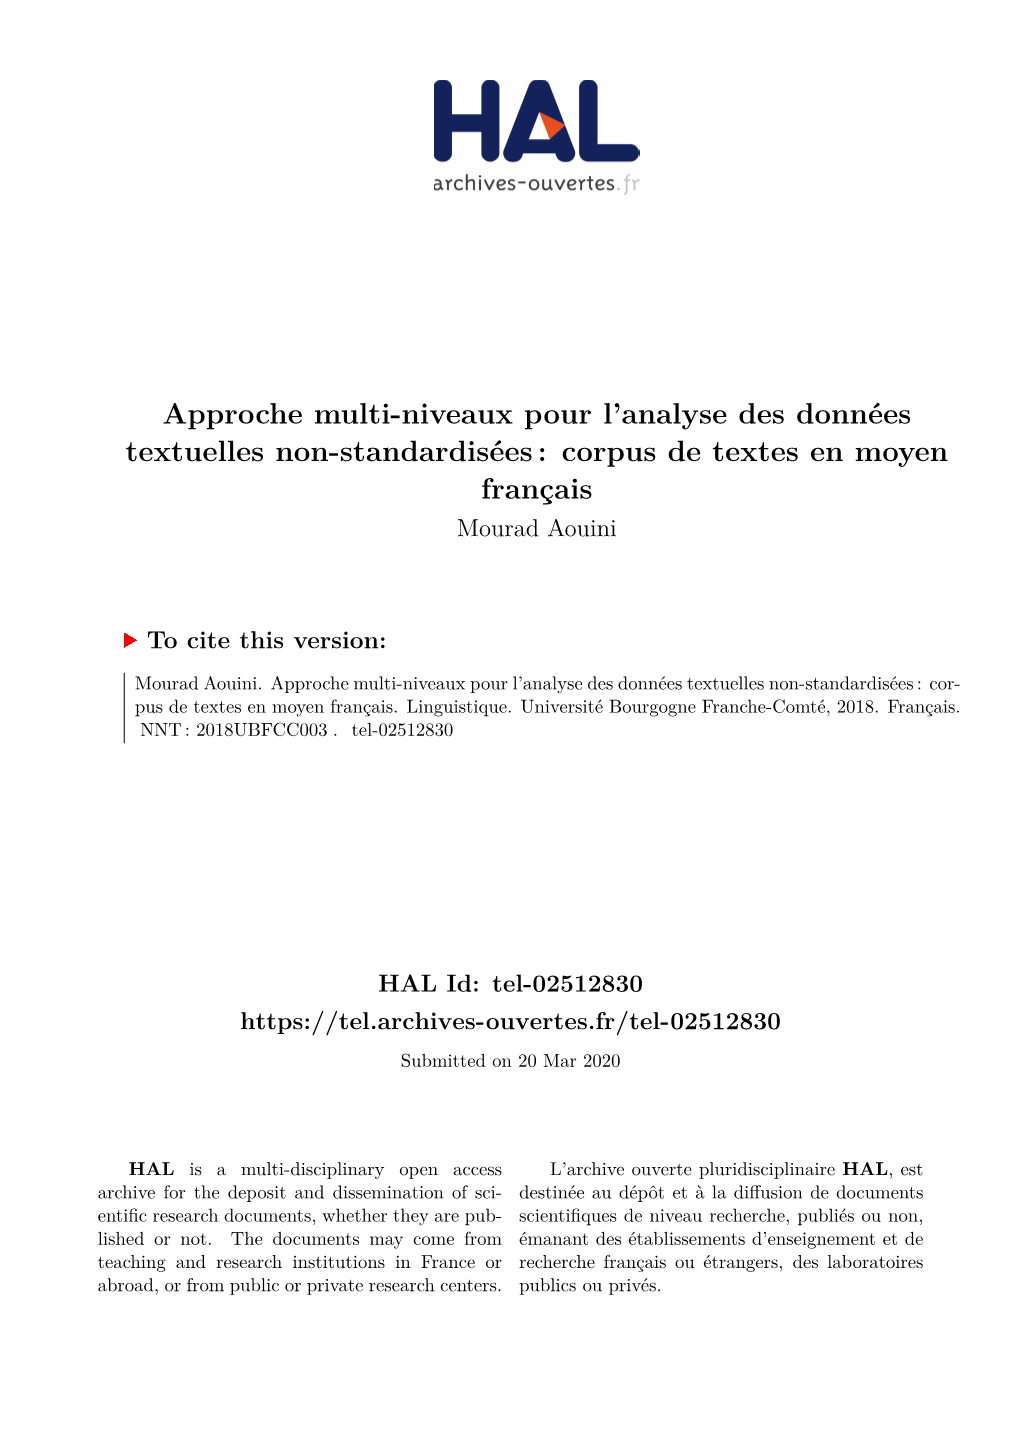 Approche Multi-Niveaux Pour L'analyse Des Données Textuelles Non-Standardisées: Corpus De Textes En Moyen Français